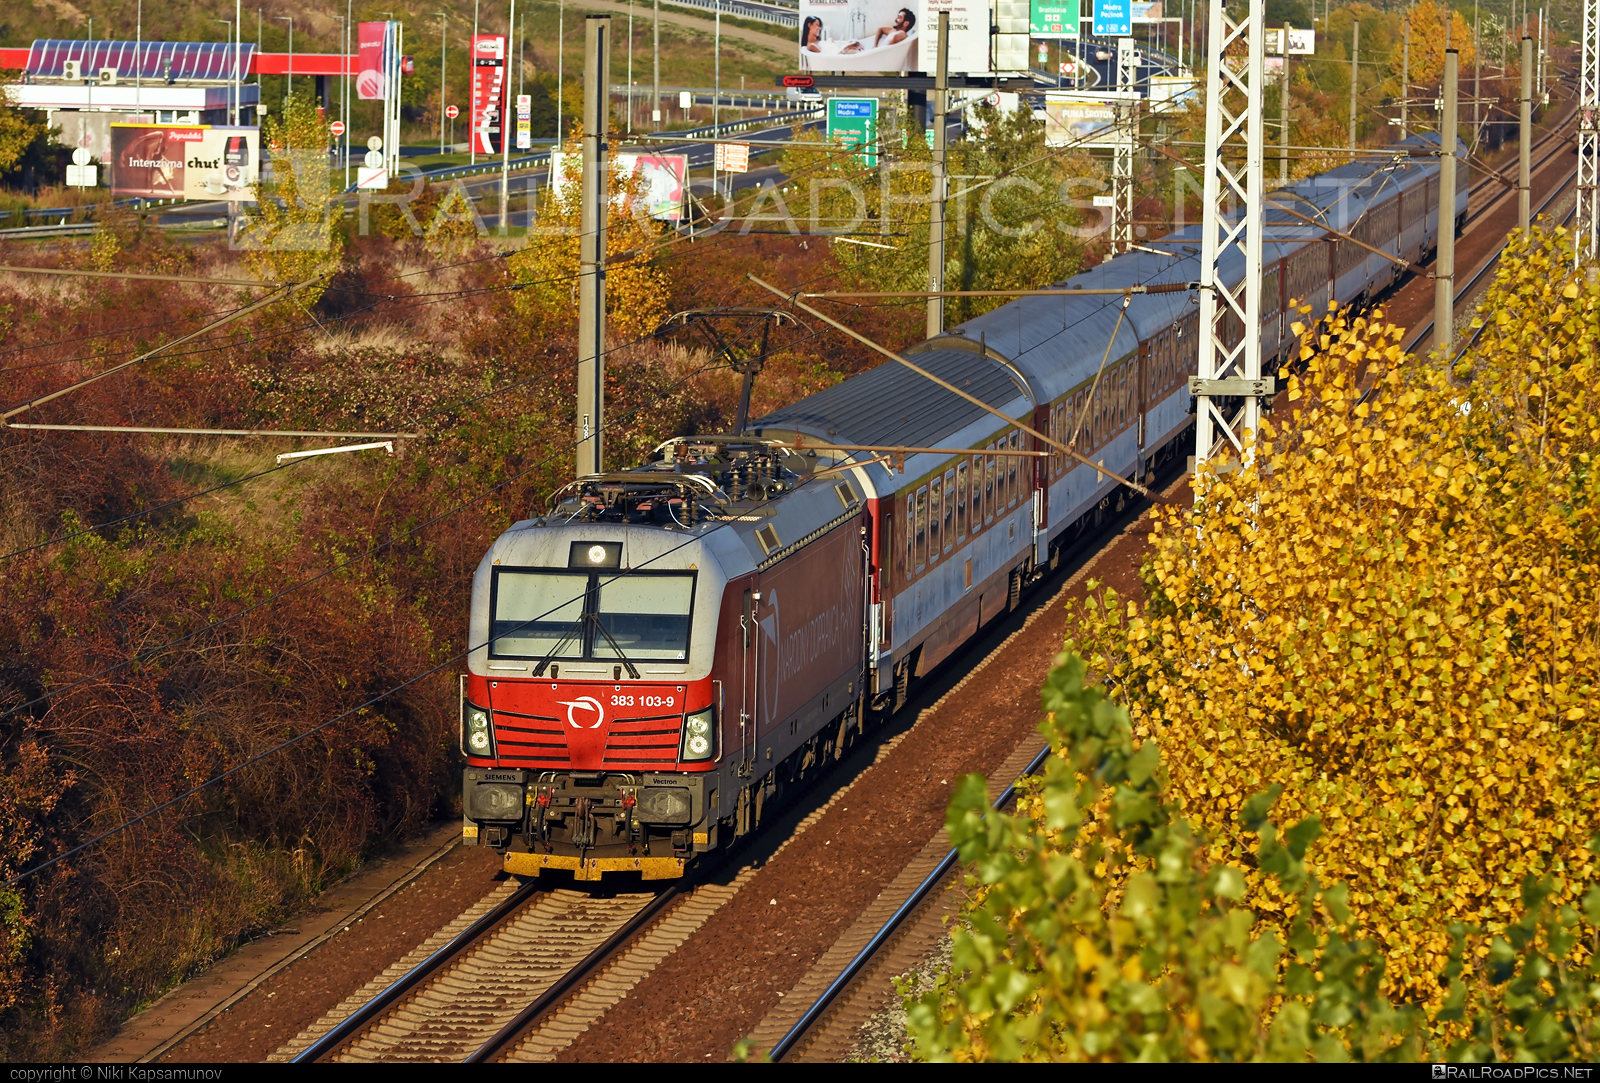 Siemens Vectron MS - 383 103-9 operated by Železničná Spoločnost' Slovensko, a.s. #SRailLease #SRailLeaseSro #ZeleznicnaSpolocnostSlovensko #raill #siemens #siemensVectron #siemensVectronMS #vectron #vectronMS #zssk